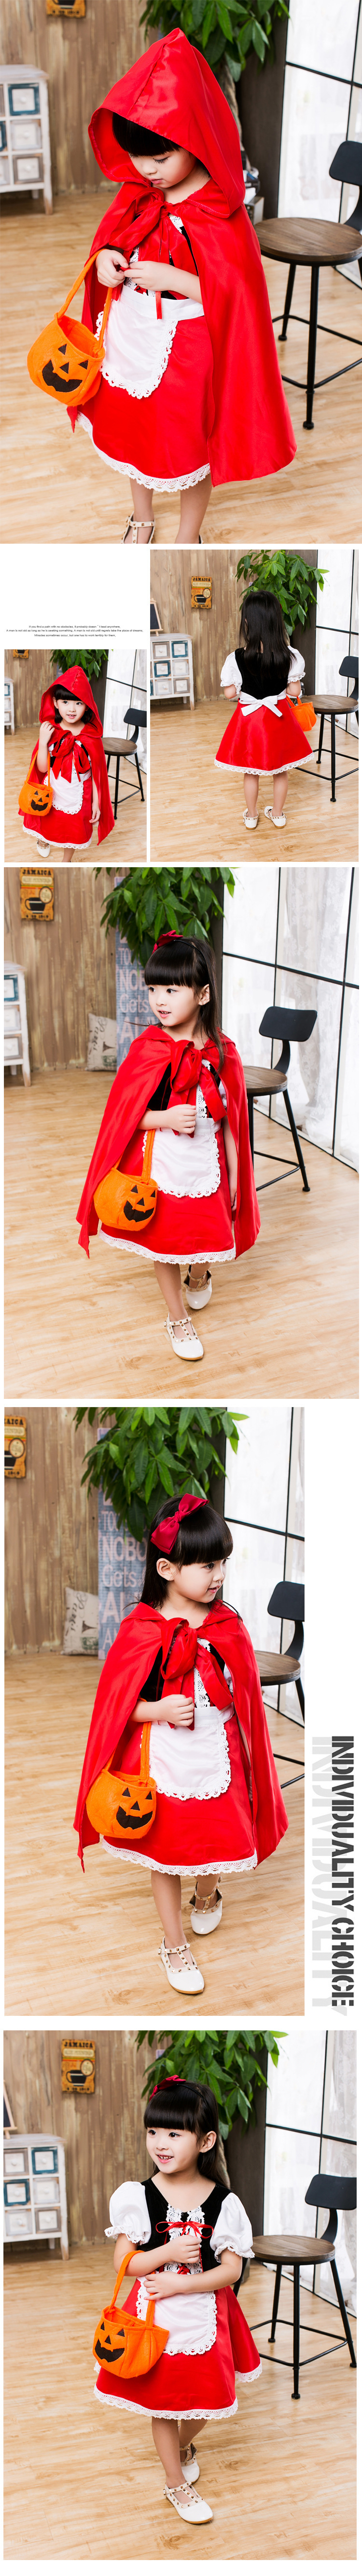 Trang phục hóa trang xinh xắn cho bé gái vào dịp halloween